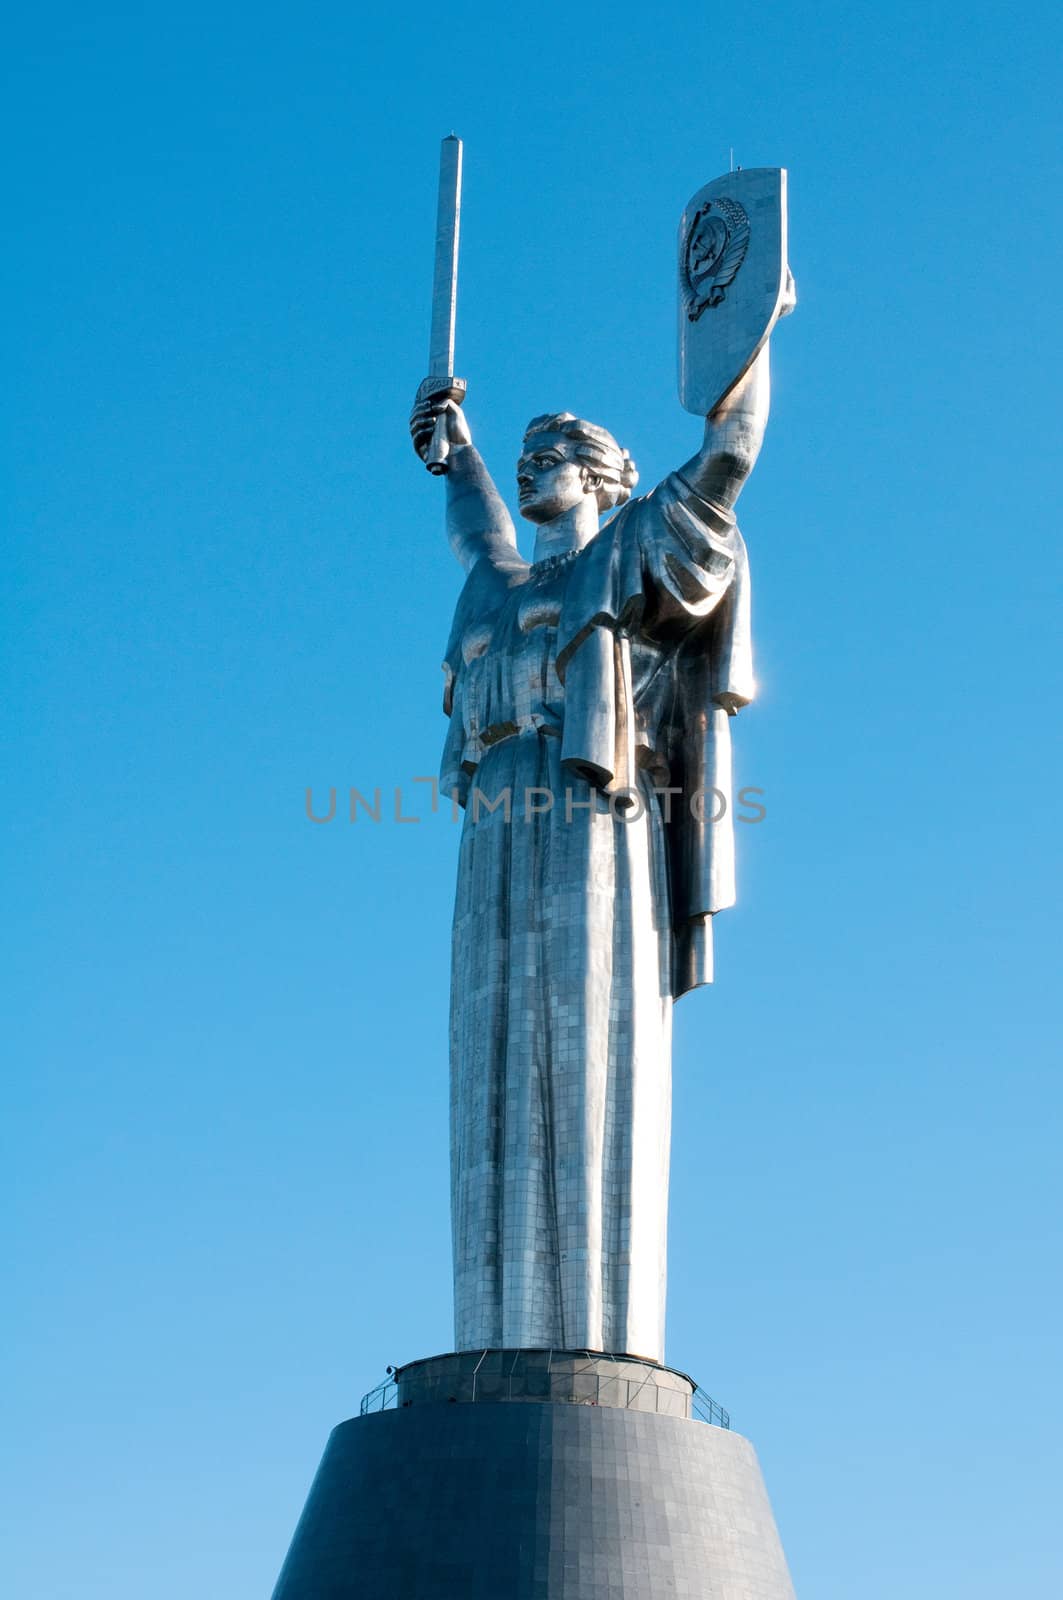 Statue of the Motherland, in Kiev, Ukraine by DNKSTUDIO